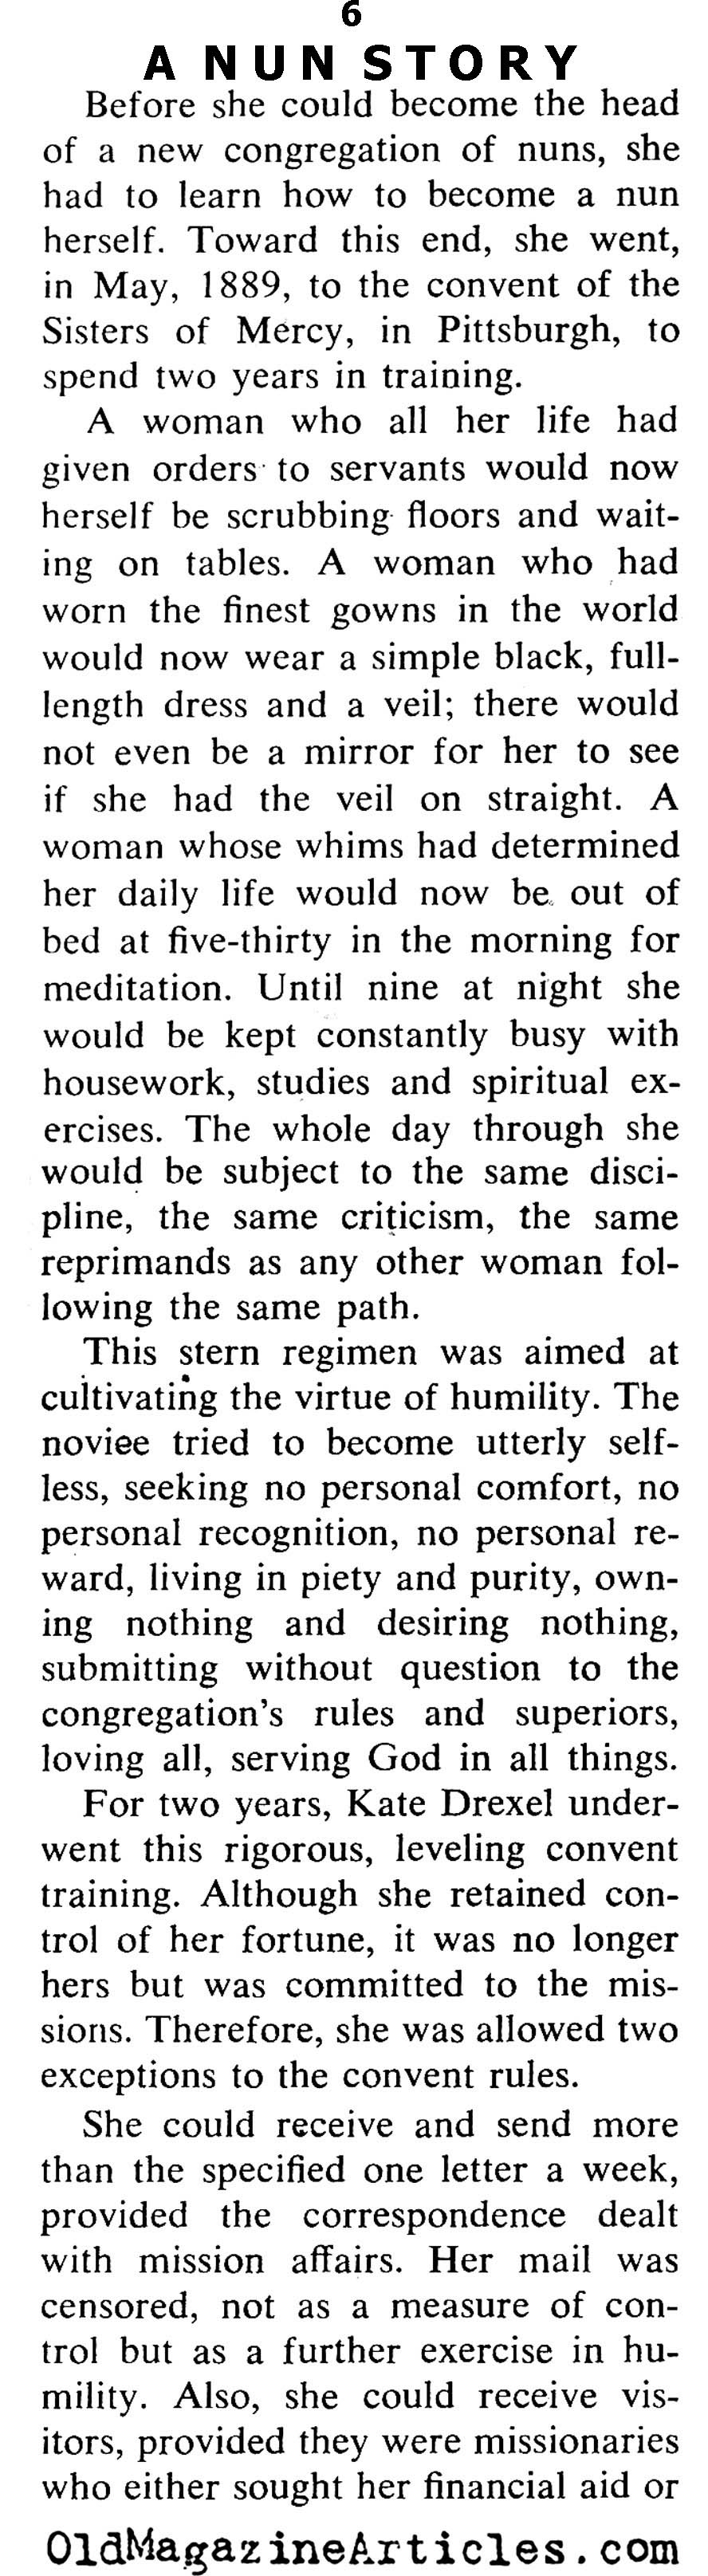 A Really Rich Nun (Coronet Magazine, 1964)